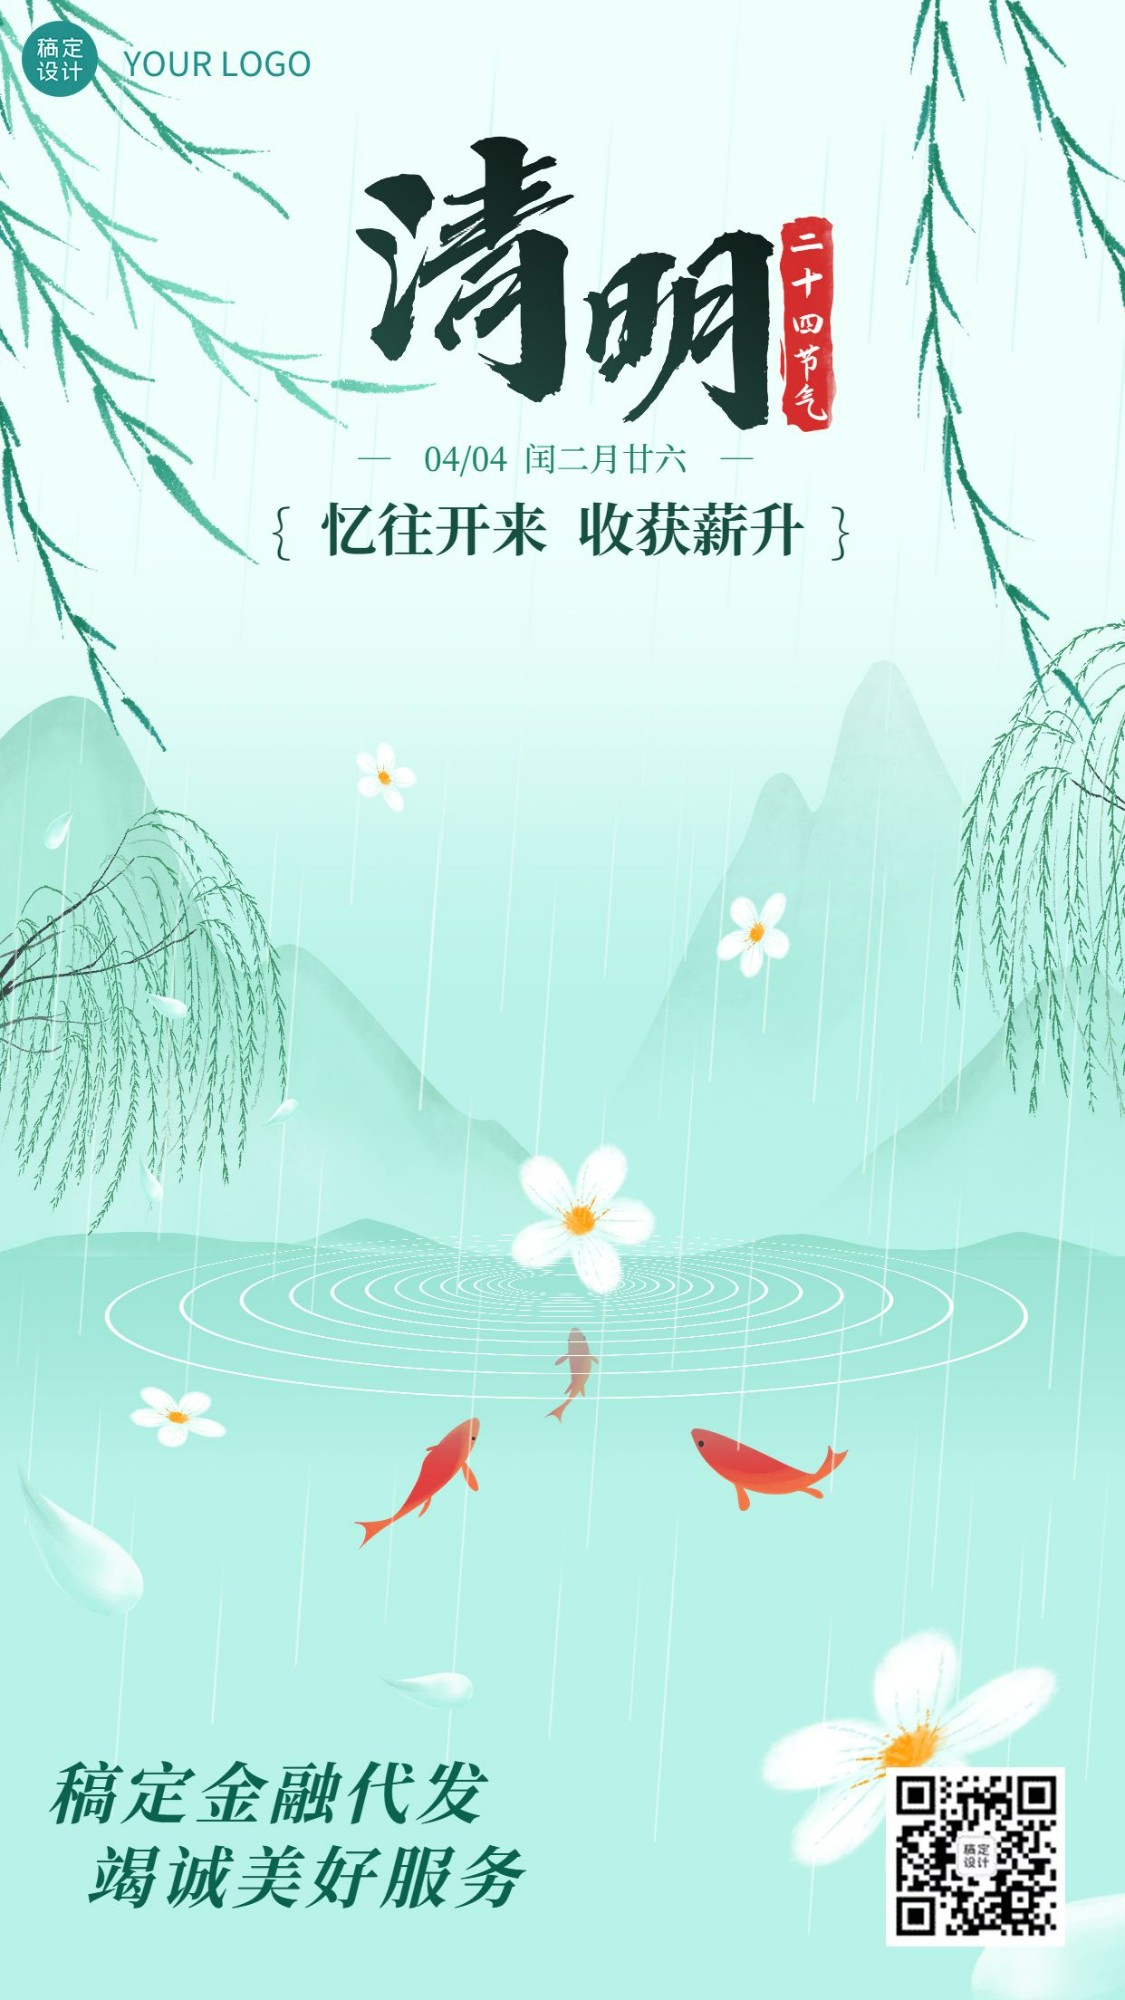 清明节金融保险节日祝福清新中国风手机海报预览效果